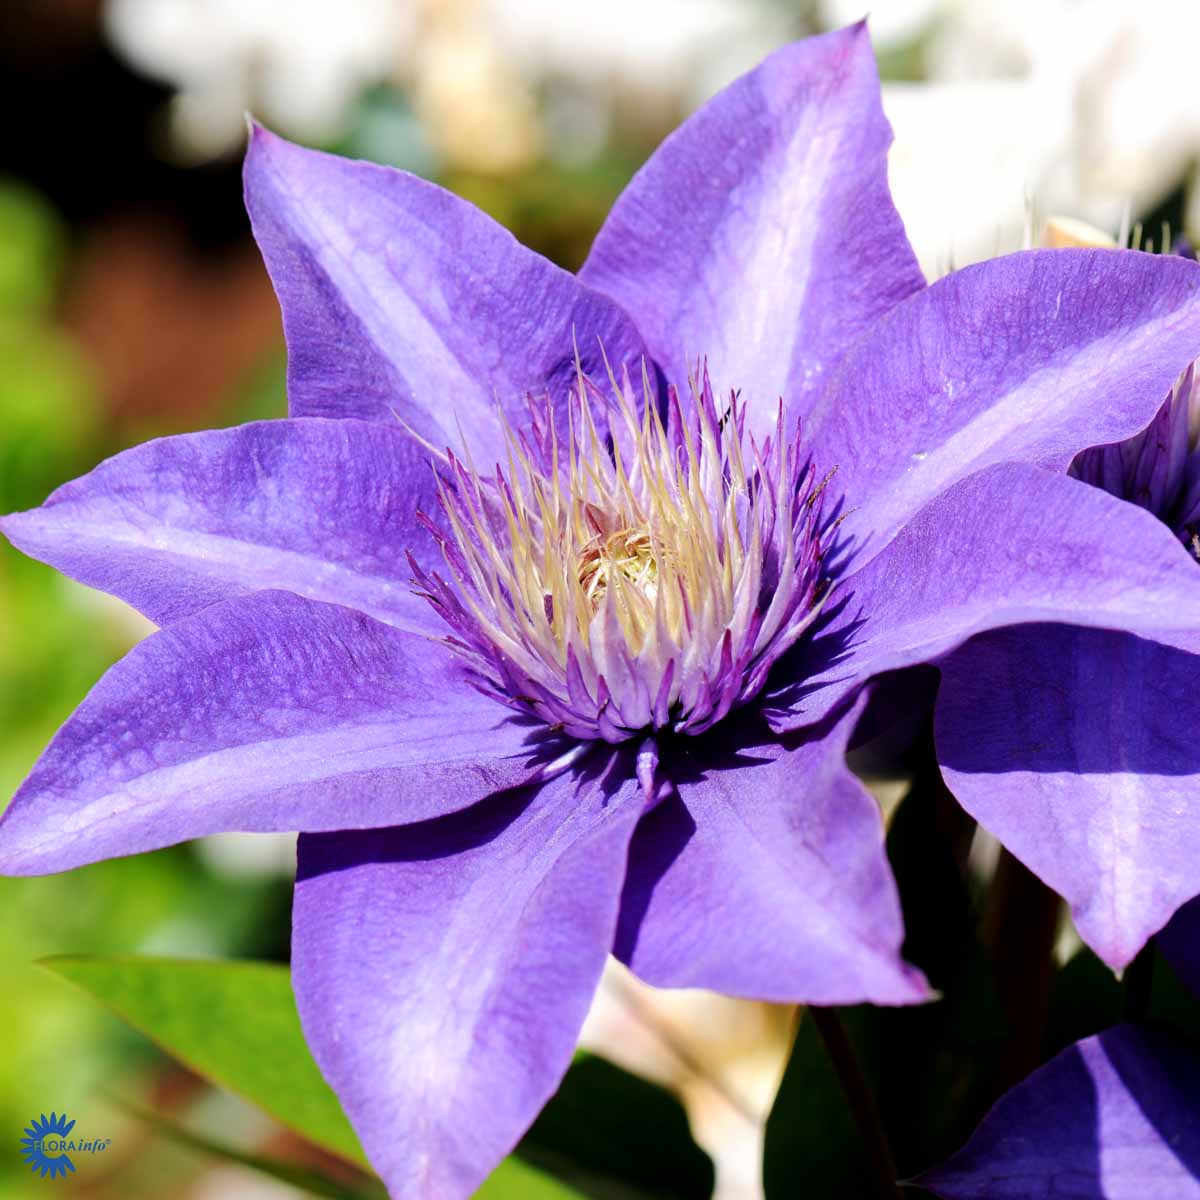 Blå klematis (Clematis Multi Blue) har flotte mørkeblå blomster med hvid stribe midt i de enkelte kronblade